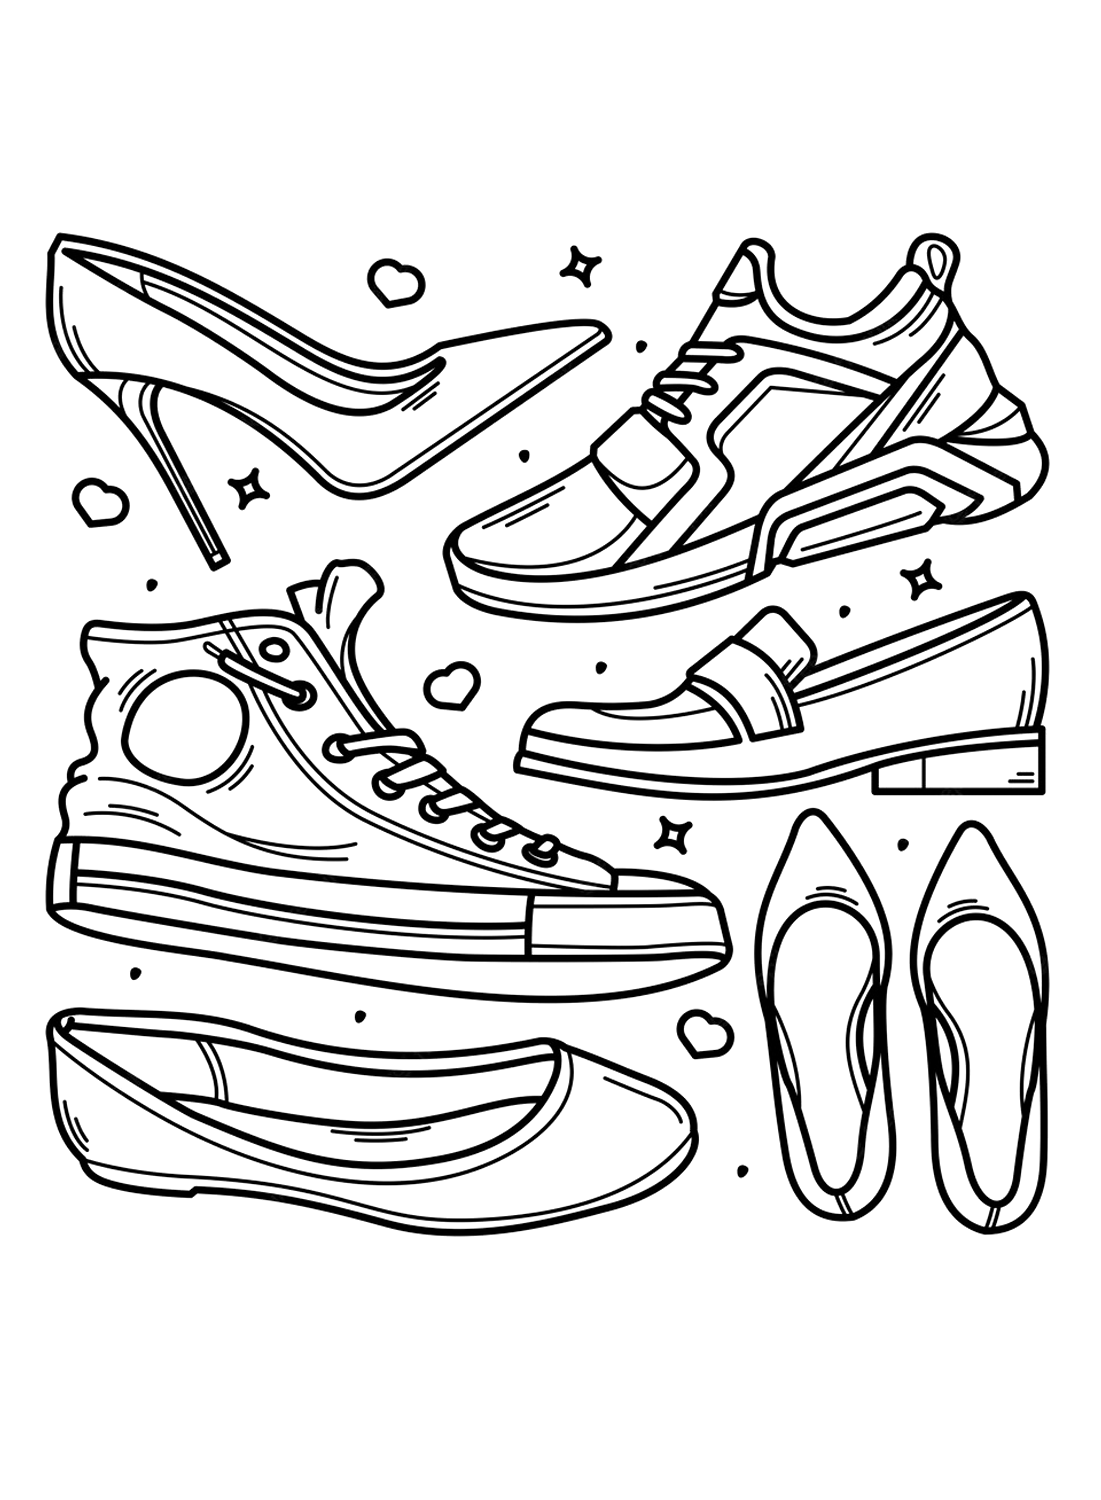 Viele Arten von Schuhen zum Ausmalen von Shoe